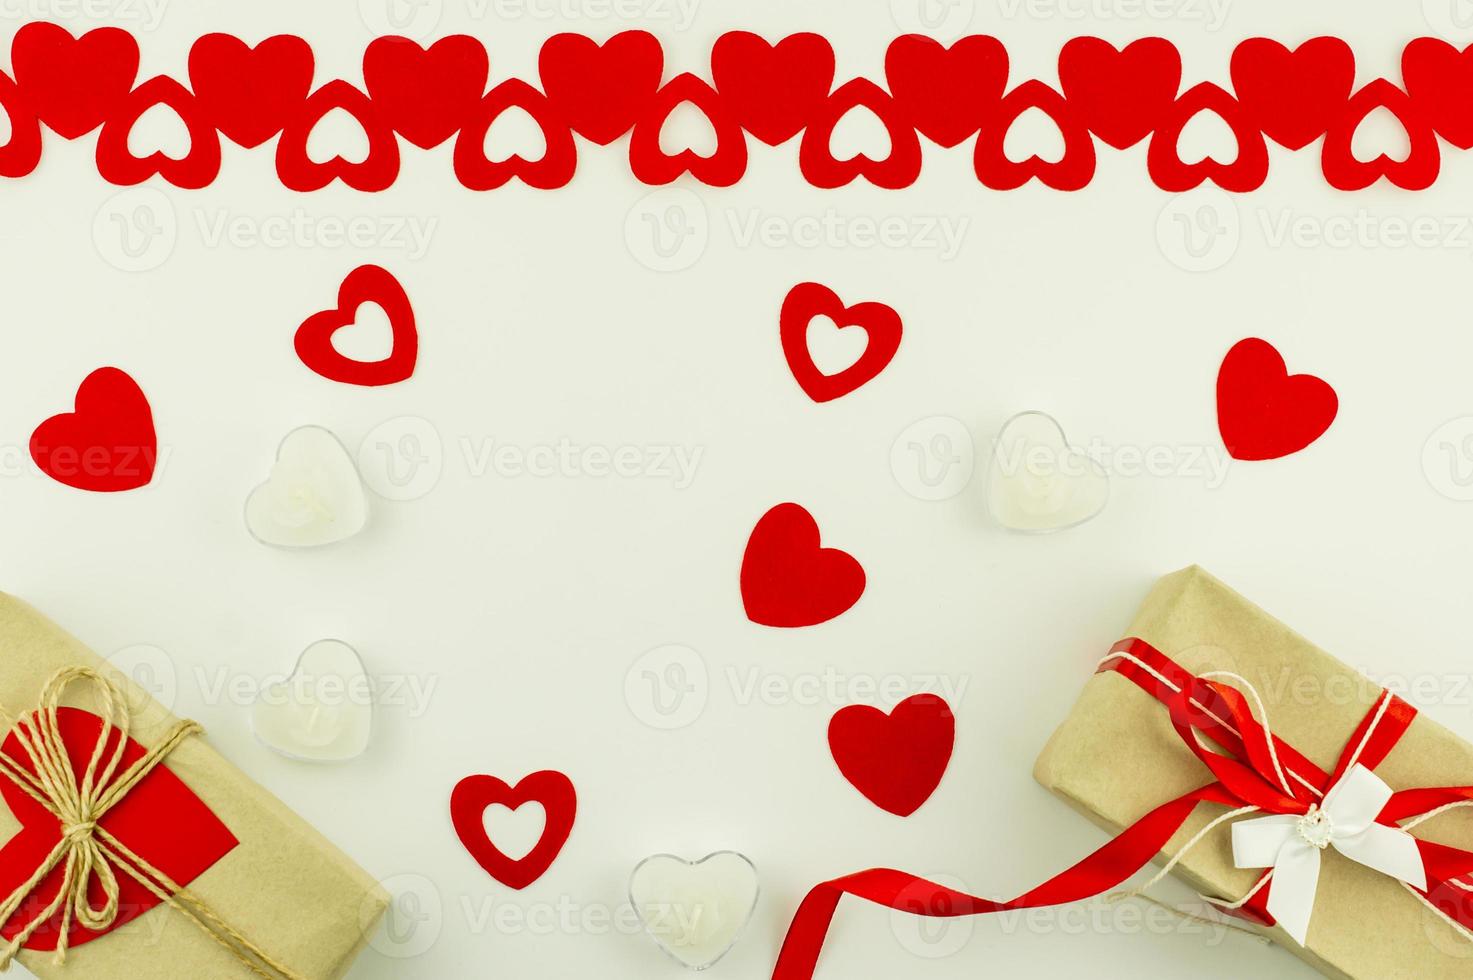 fondo festivo para el día de san valentín. decoración de corazones rojos, velas en forma de corazón y cajas de regalo en papel artesanal. vista superior. endecha plana foto